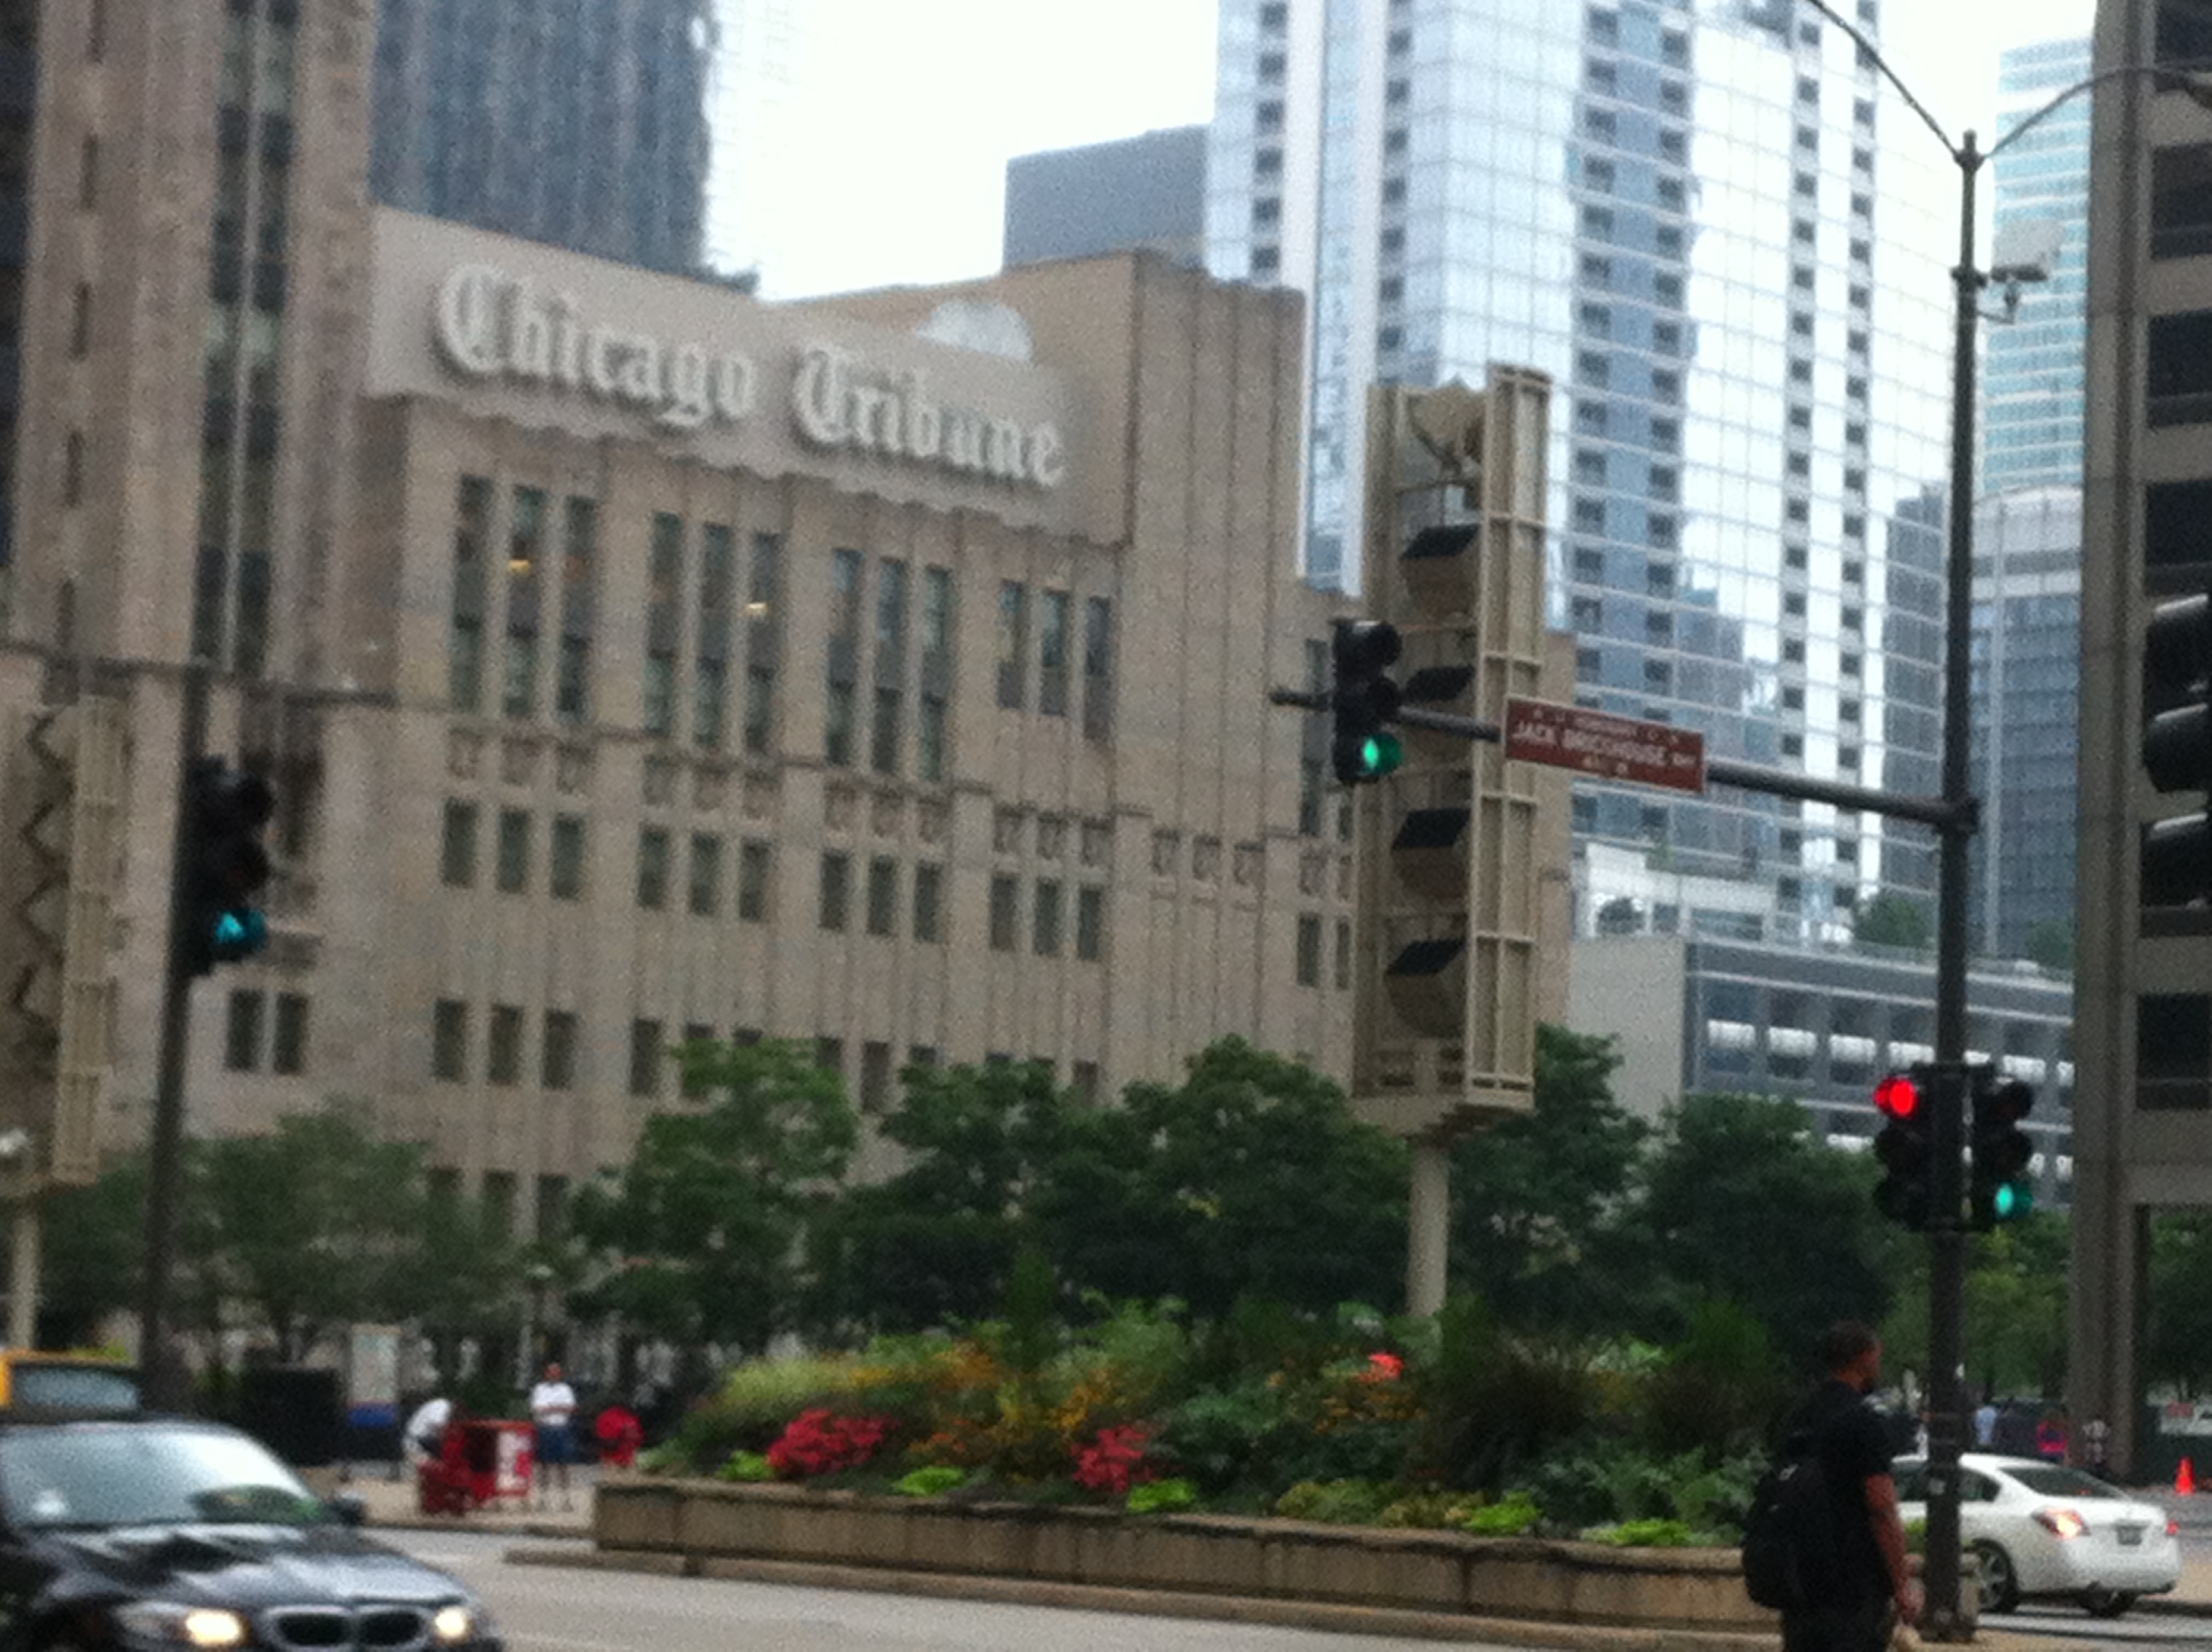 Le Chicago Tribune vu du pont.